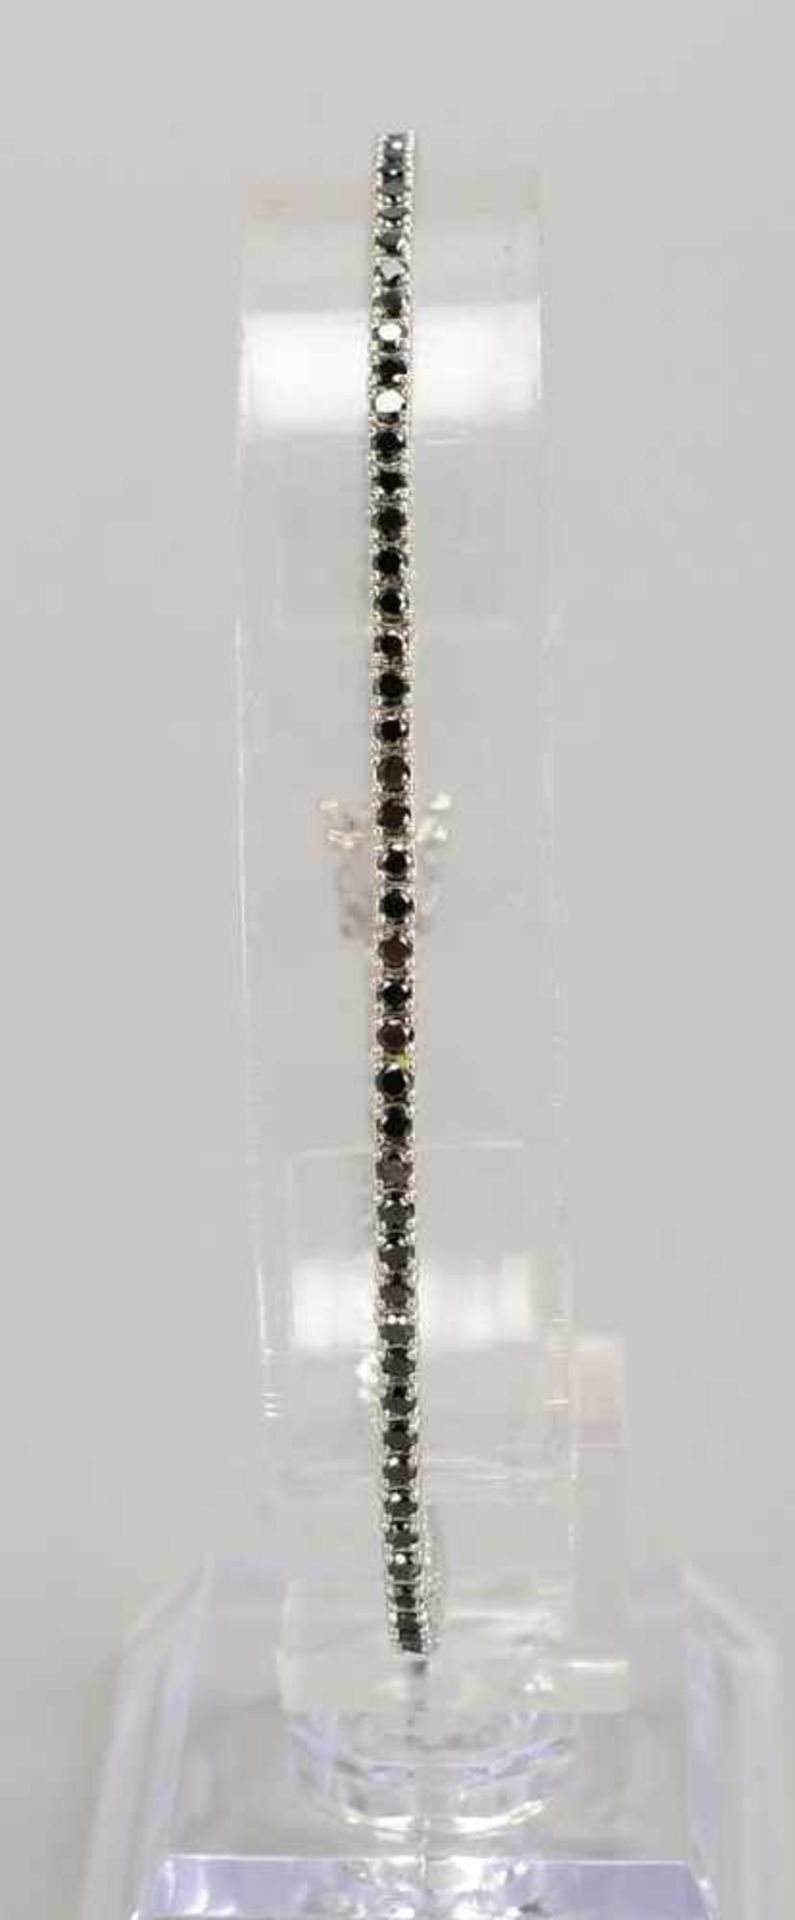 Tennisarmband, 750 WG, besetzt mit schwarzen Diamanten/zusammen 2,43 ct; Länge 20,5 cm, Gewicht 6,57 - Bild 2 aus 2